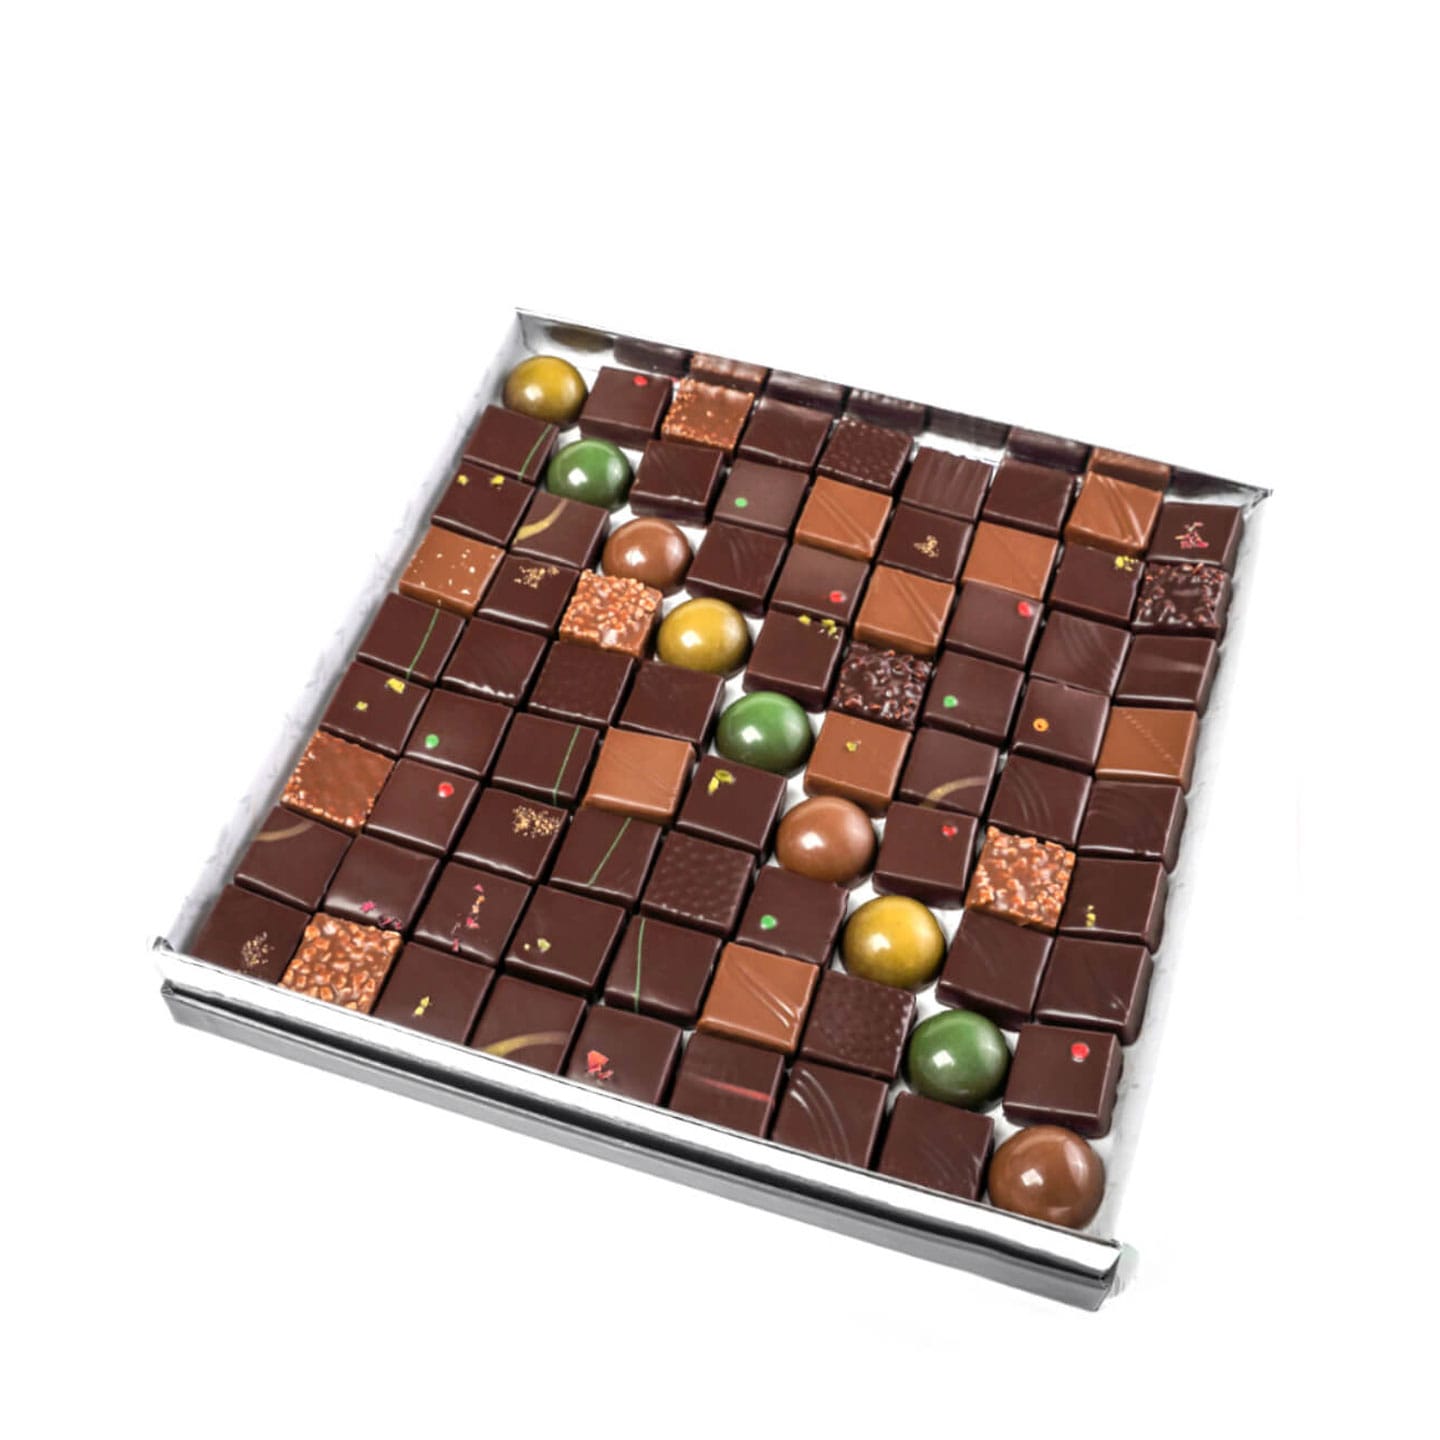 Joseph • Assortiment Chocolats Noir Prestige Indien 680g - 81 pièces